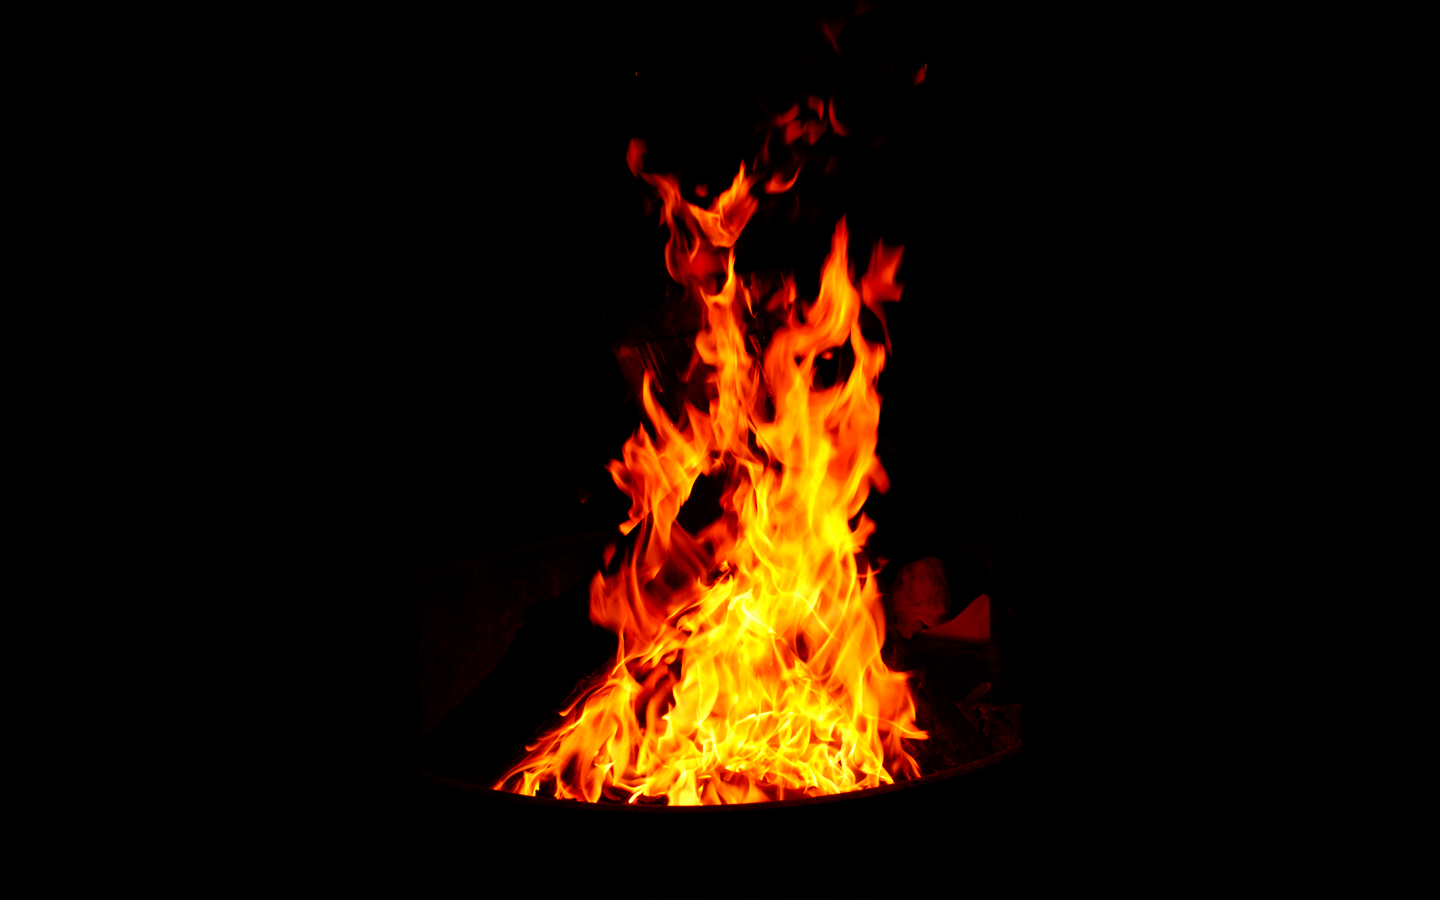 Burning fire on black background · Free Stock Photo